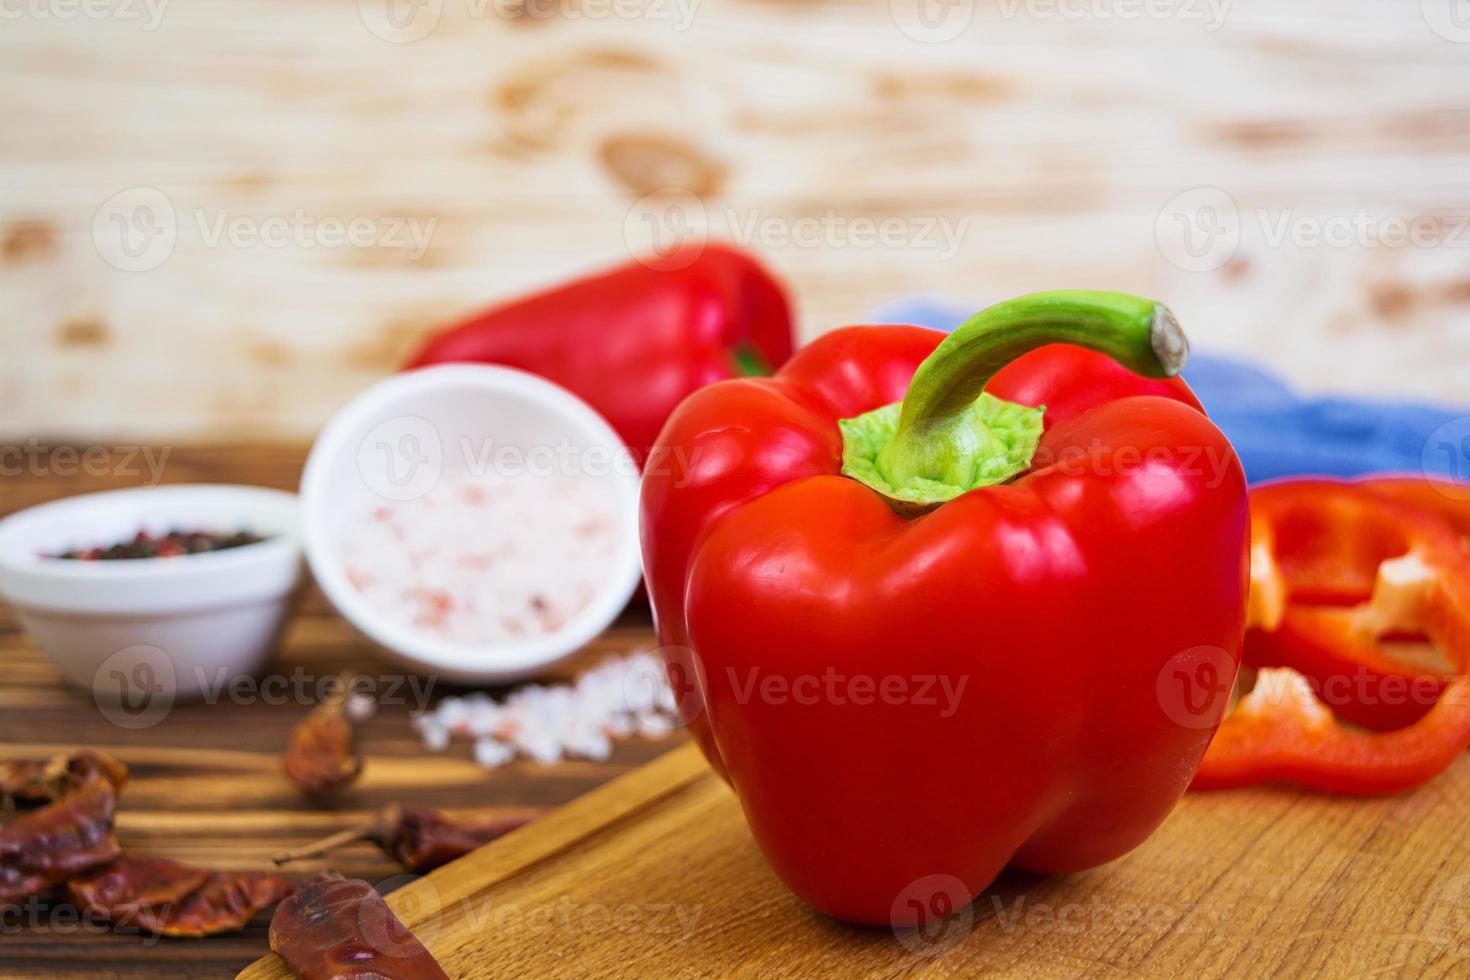 pimenta, tomate, sal, tempero diferente em fundo de madeira foto